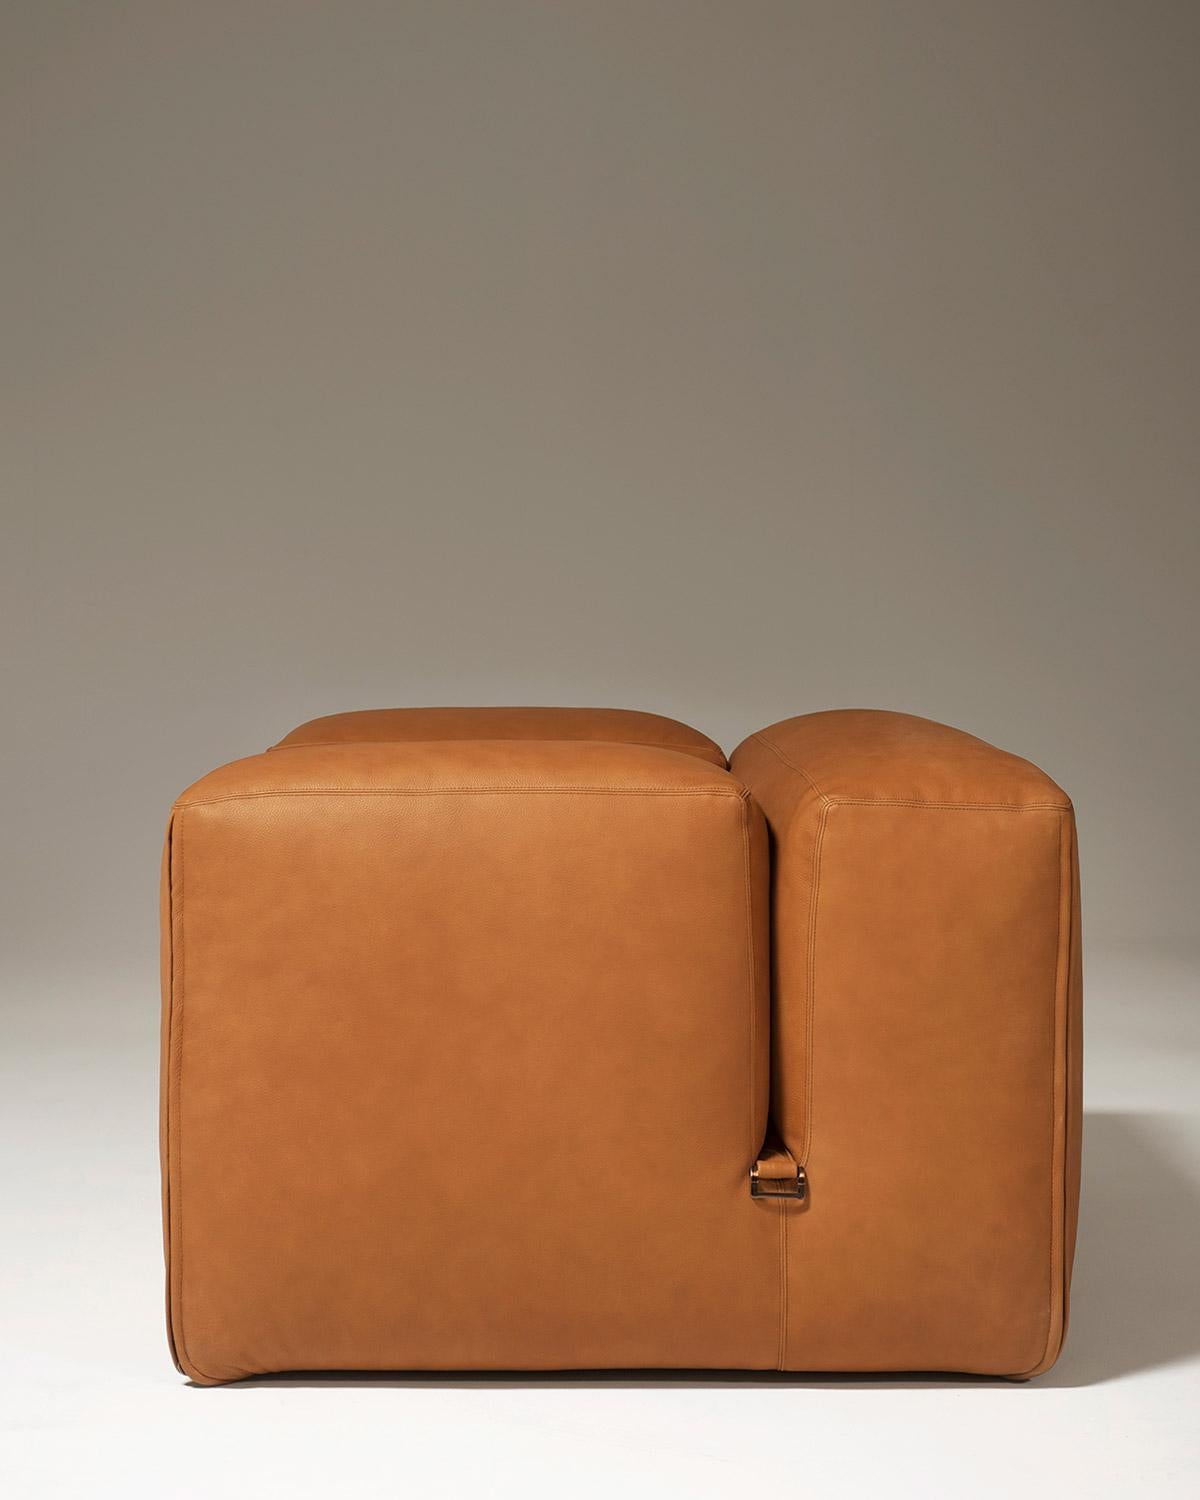 Modern Tacchini Le Mura Armchair designed by Mario Bellini